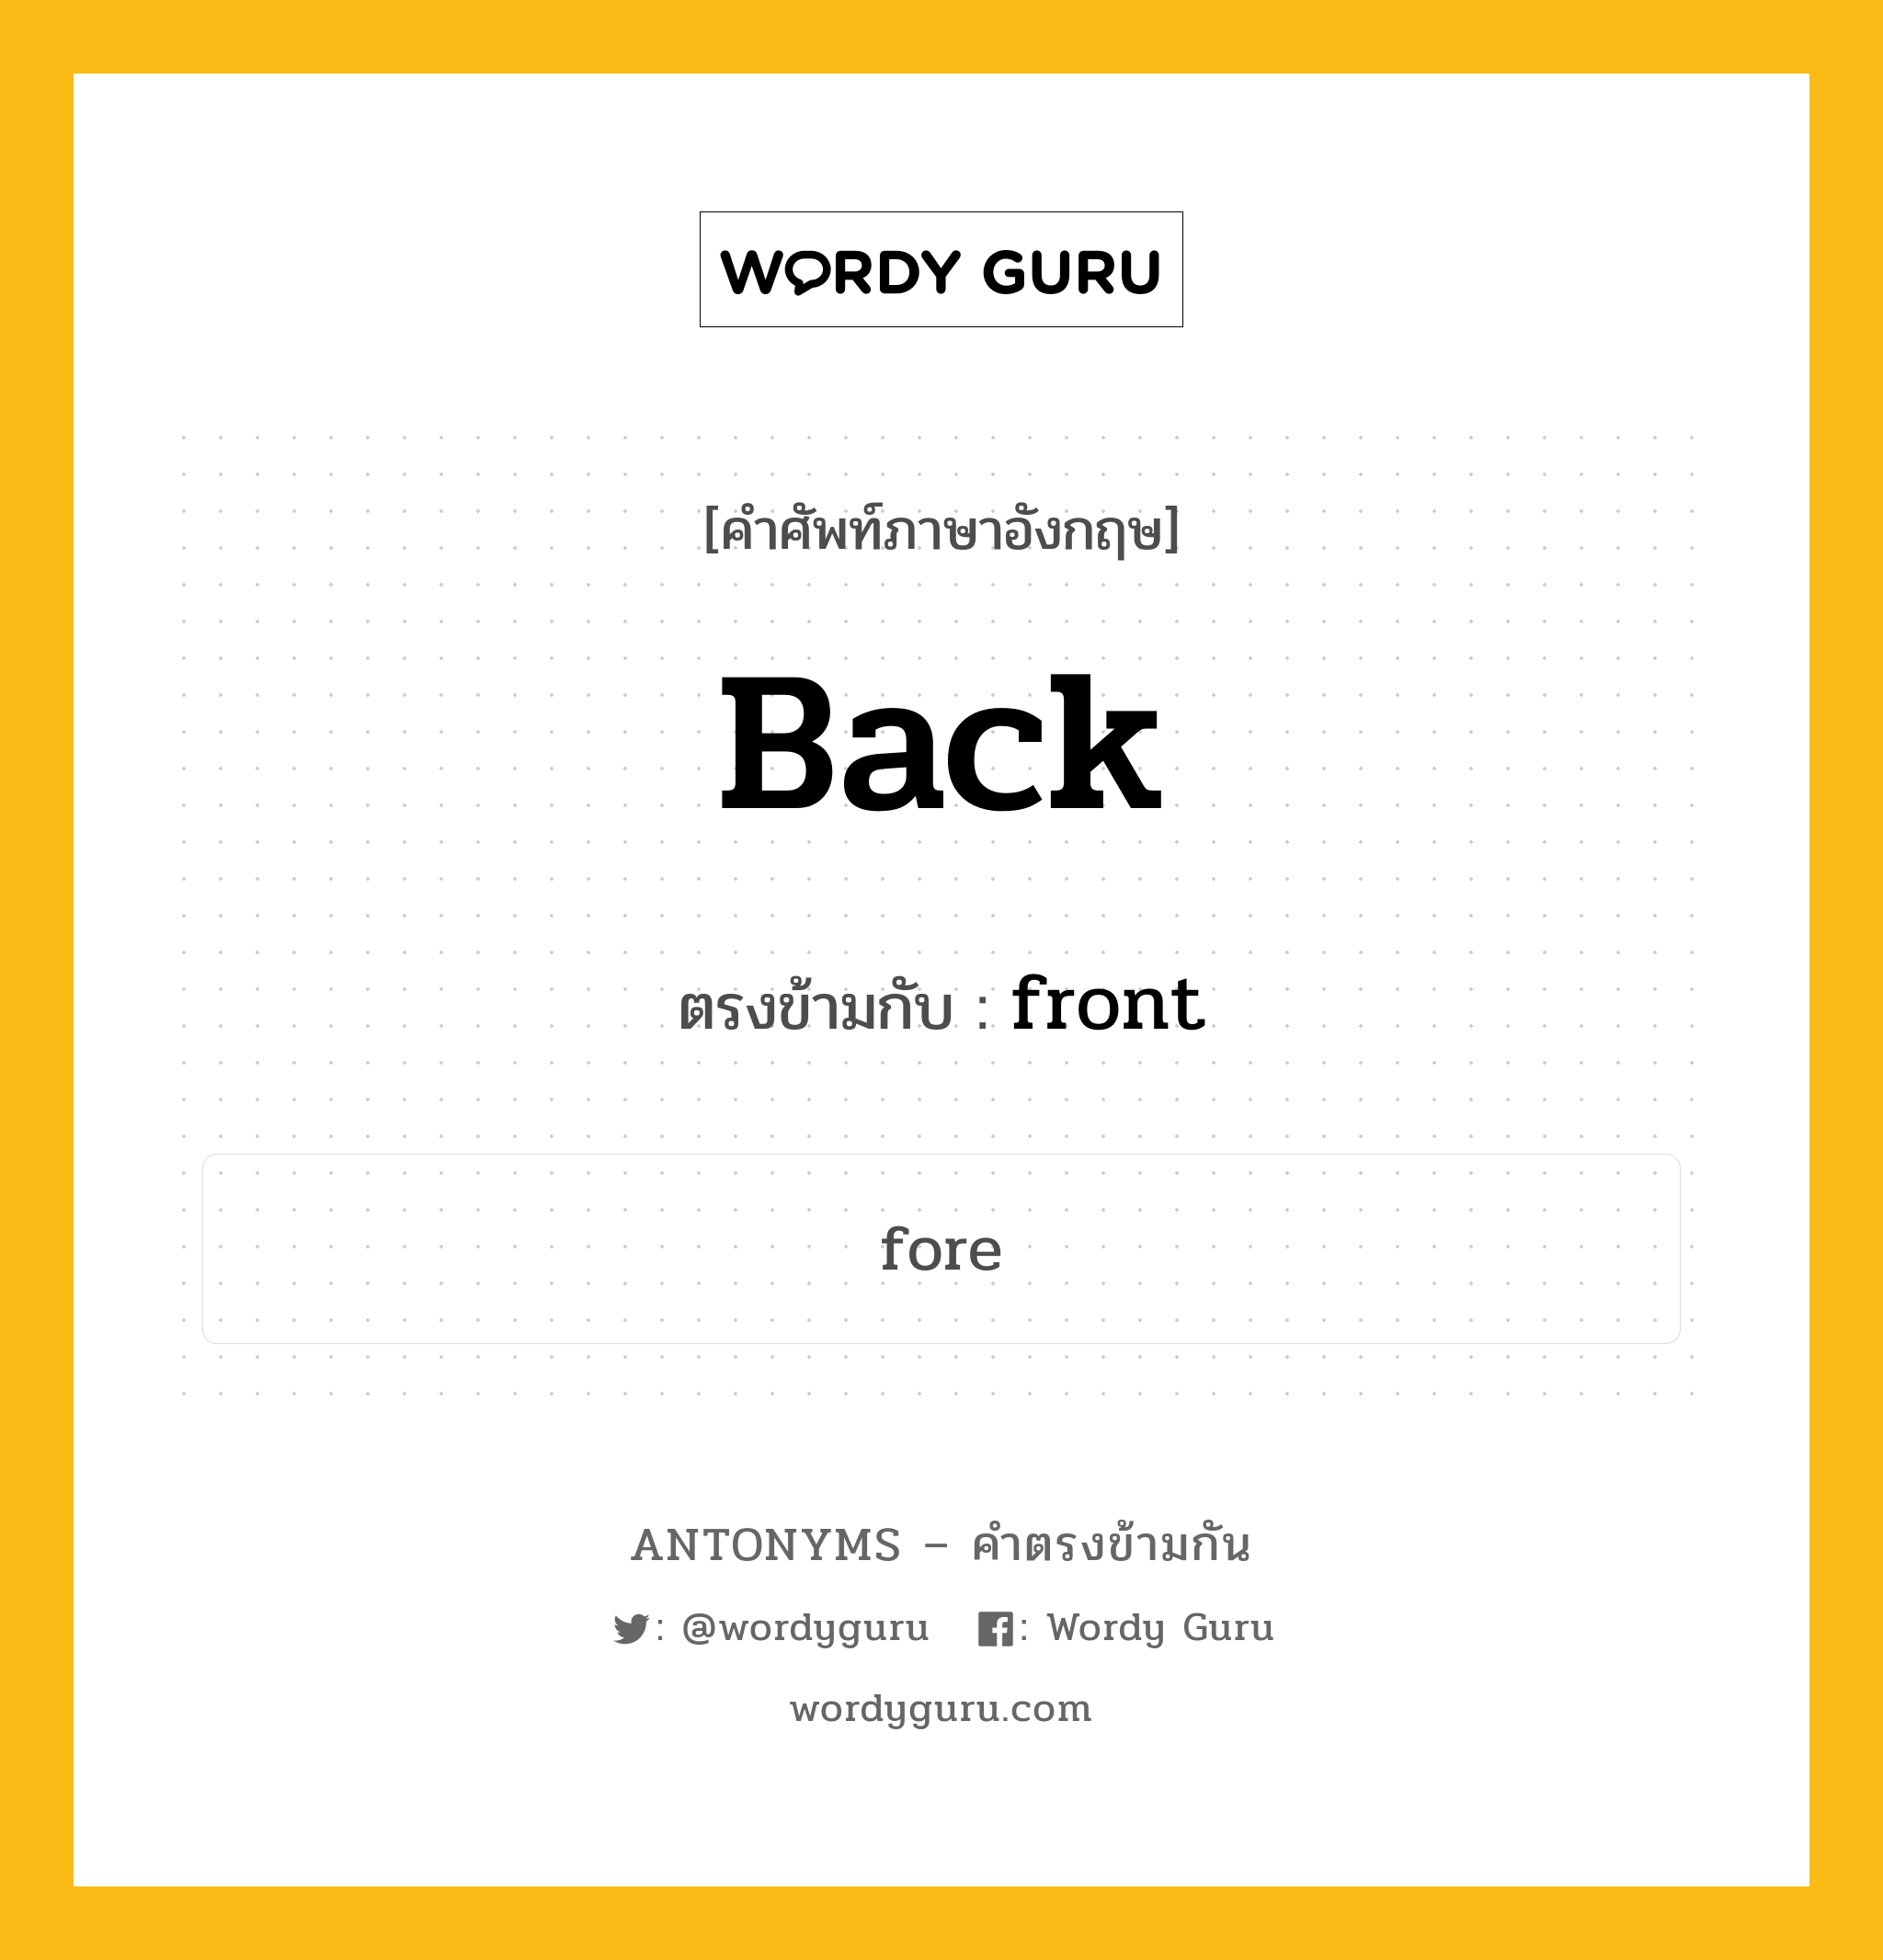 back เป็นคำตรงข้ามกับคำไหนบ้าง?, คำศัพท์ภาษาอังกฤษ back ตรงข้ามกับ front หมวด front